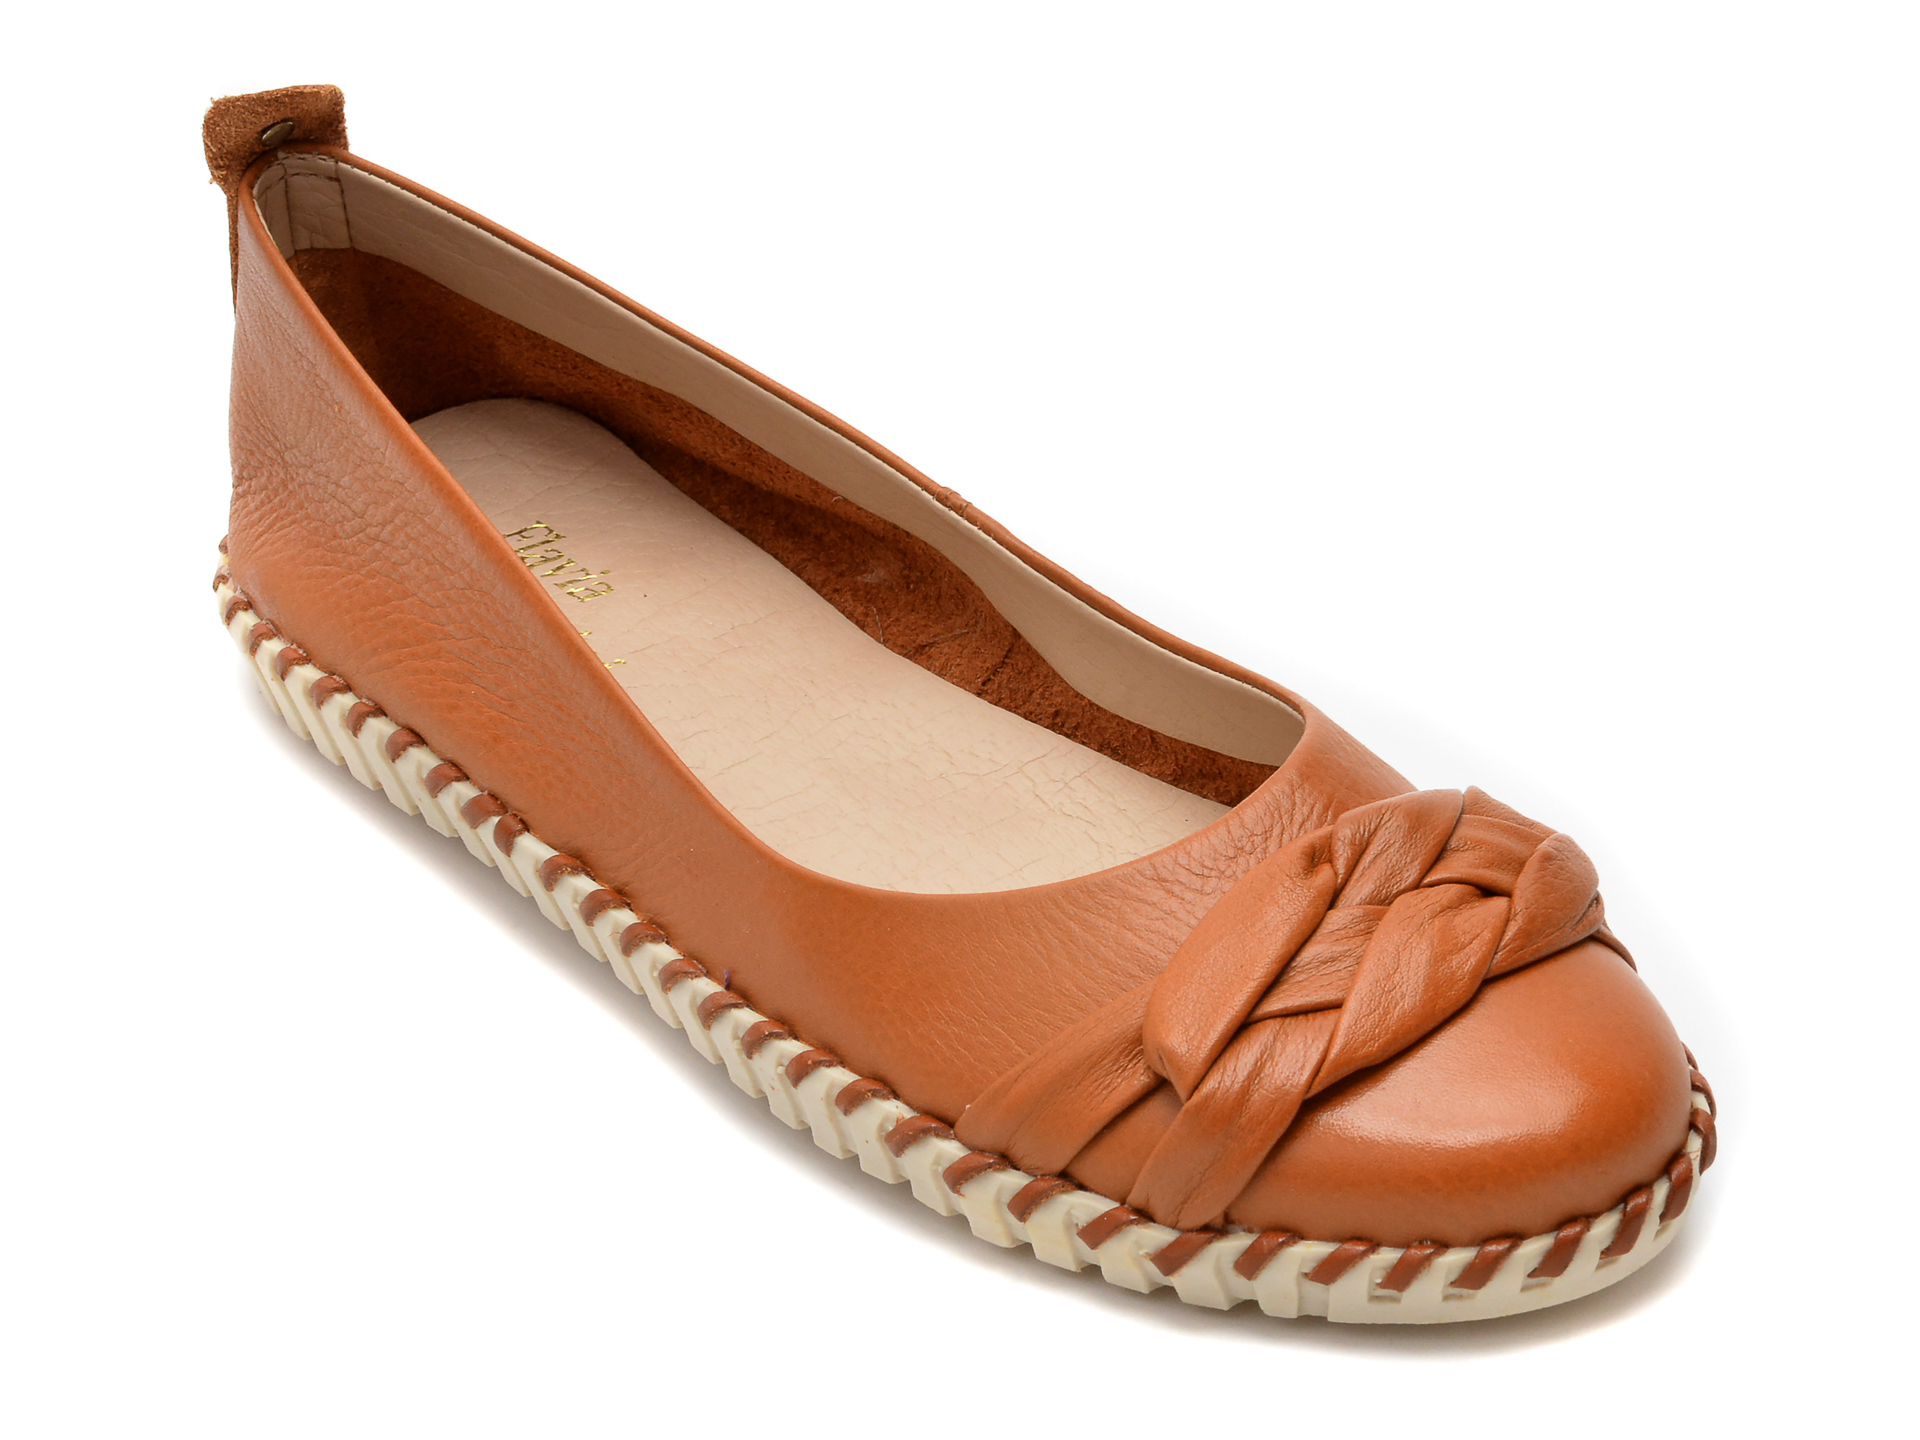 Pantofi FLAVIA PASSINI maro, 326031, din piele naturala Flavia Passini